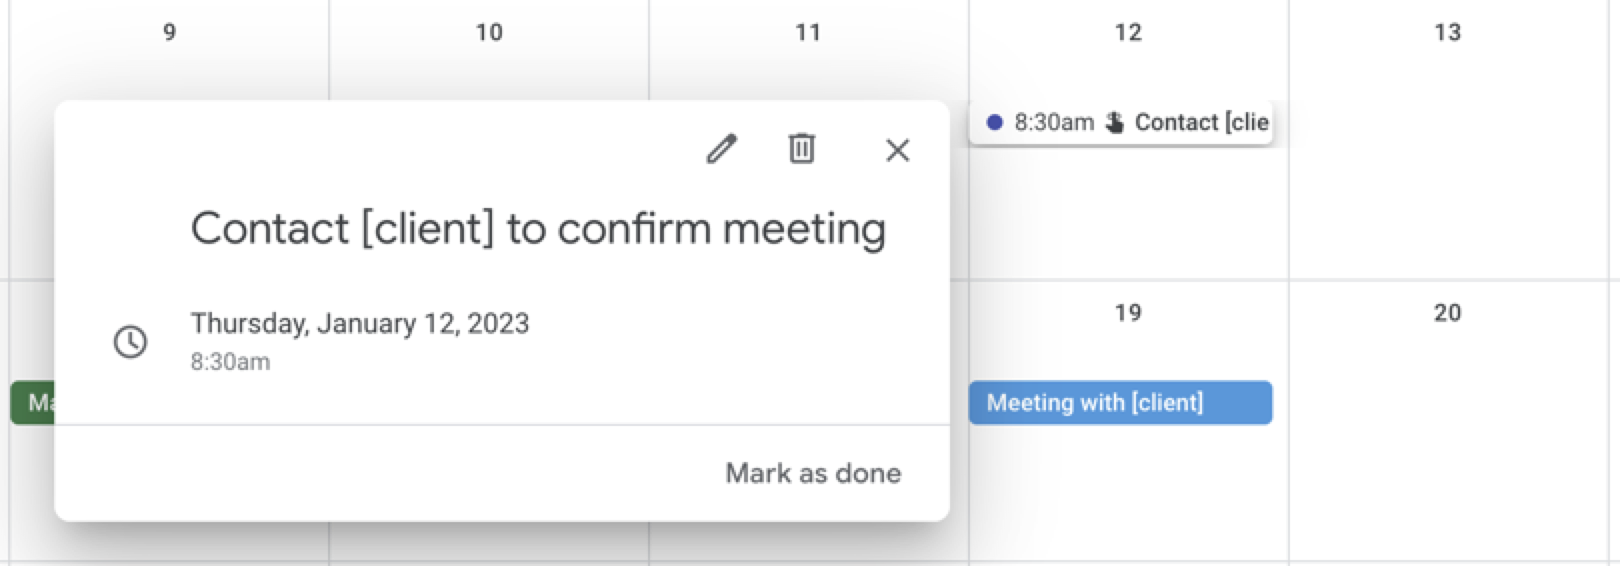 一个示例日历提醒联系客户确认会议